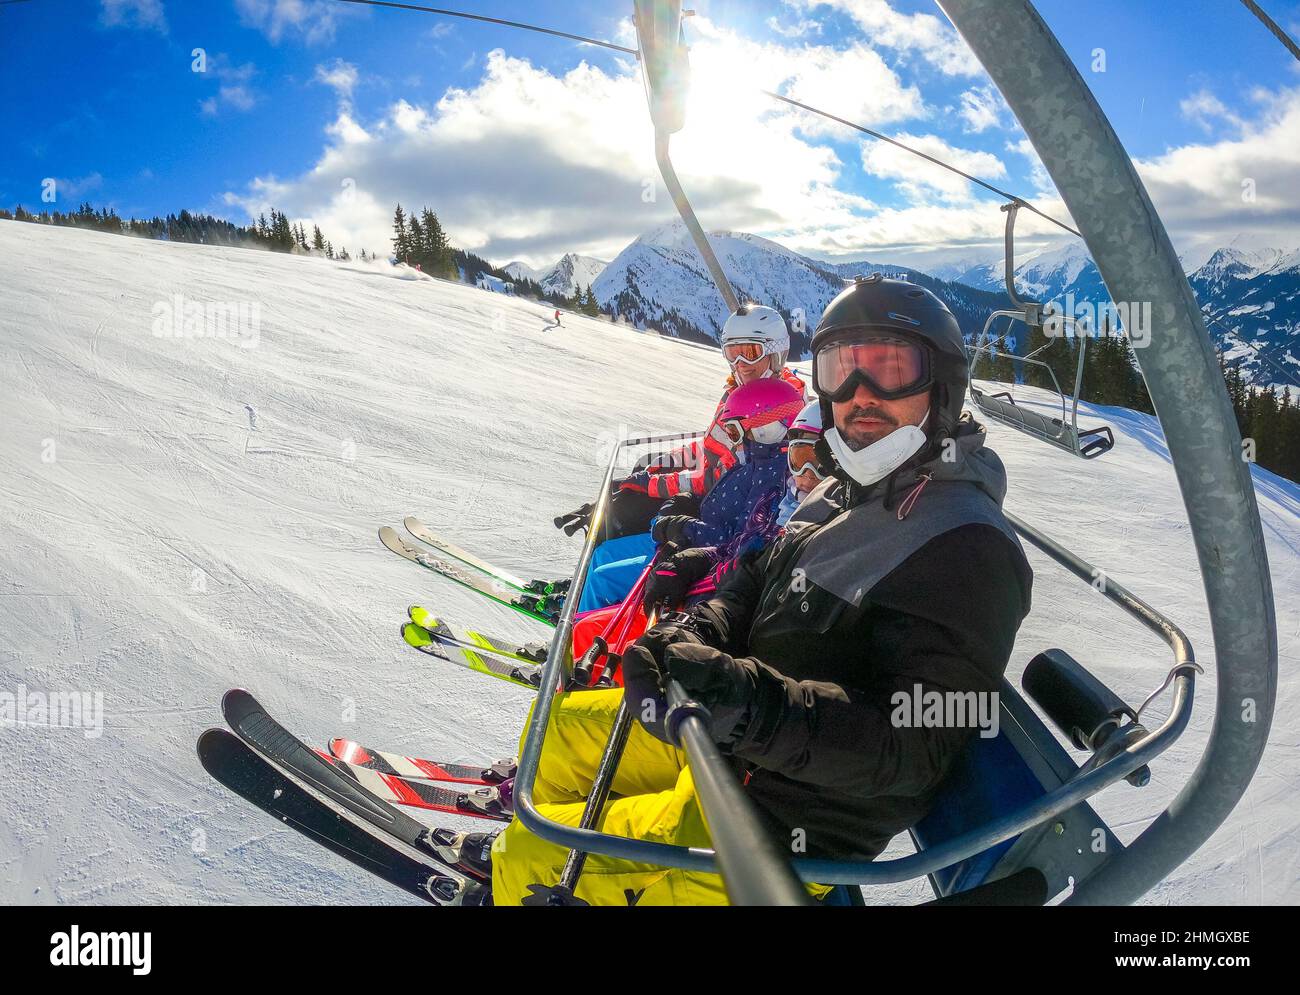 En famille, on peut faire du ski téléski en hiver. Vacances en famille en hiver, ski en train de prendre un selfie sur les remontées mécaniques avec une vue imprenable sur la montagne o Banque D'Images